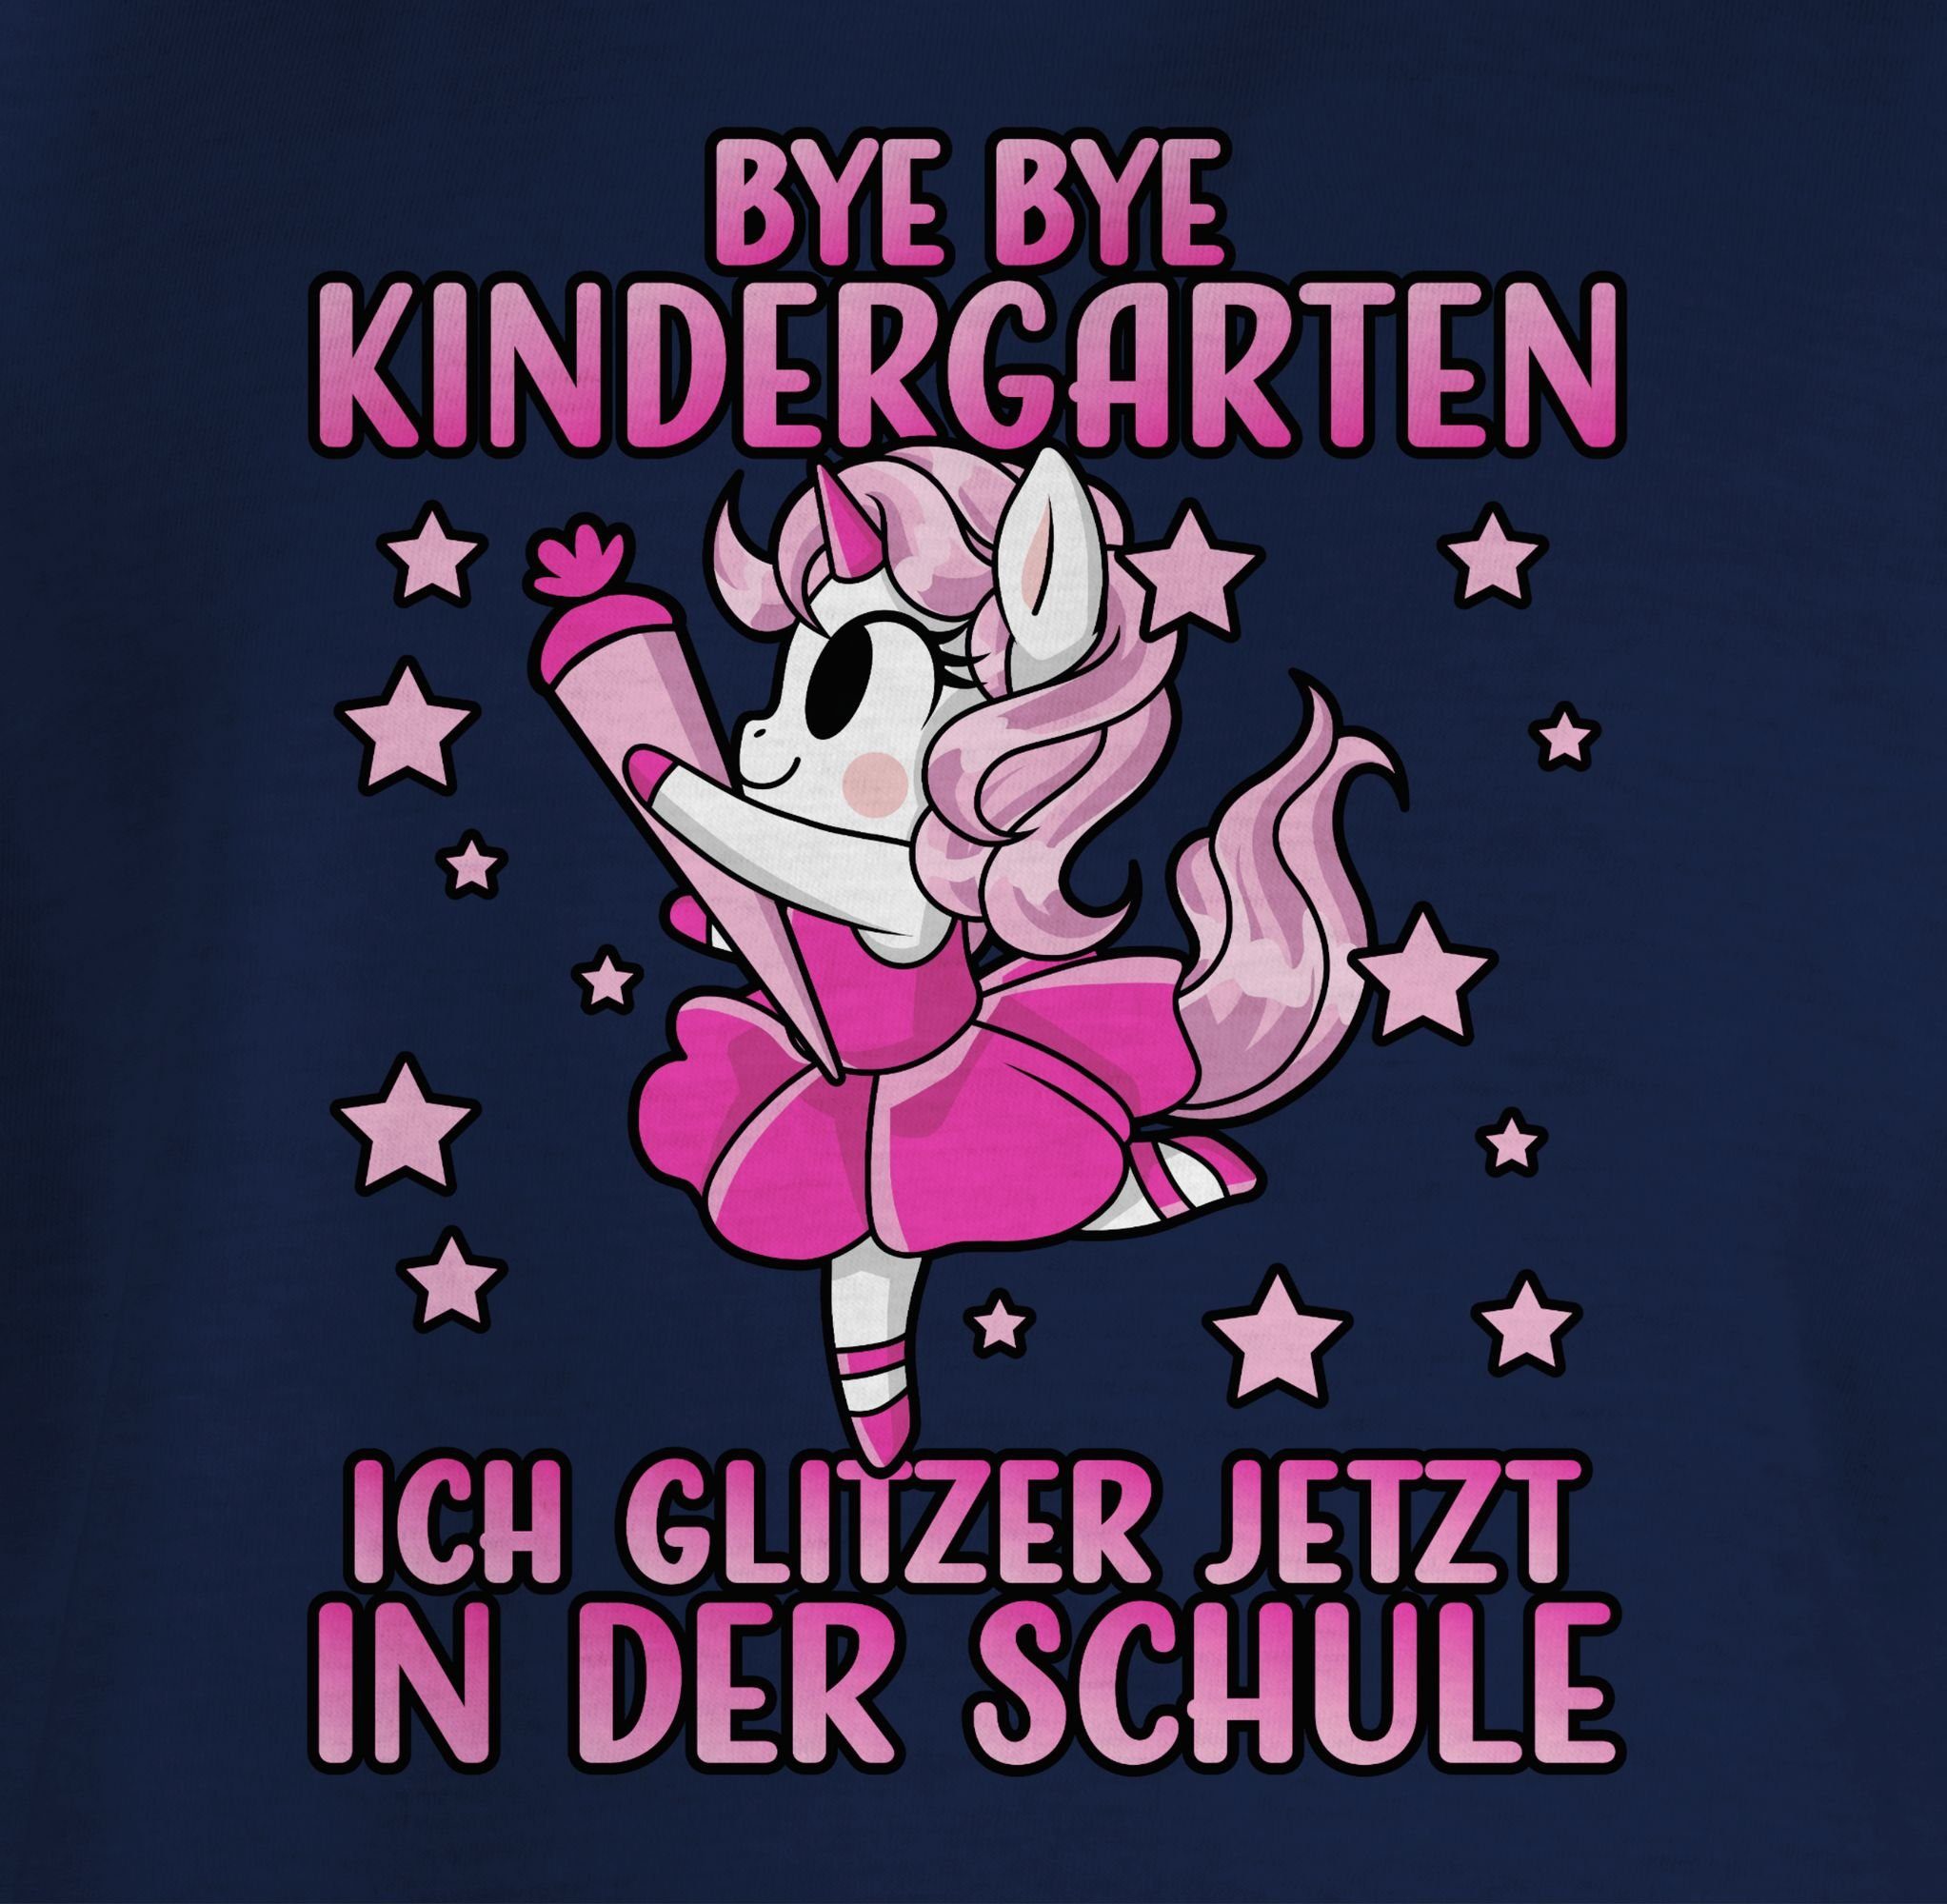 Einhorn Bye Navy Schule 1 T-Shirt in der Mädchen - Bye ich jetzt Pin Blau Kindergarten Shirtracer glitzer Einschulung mit